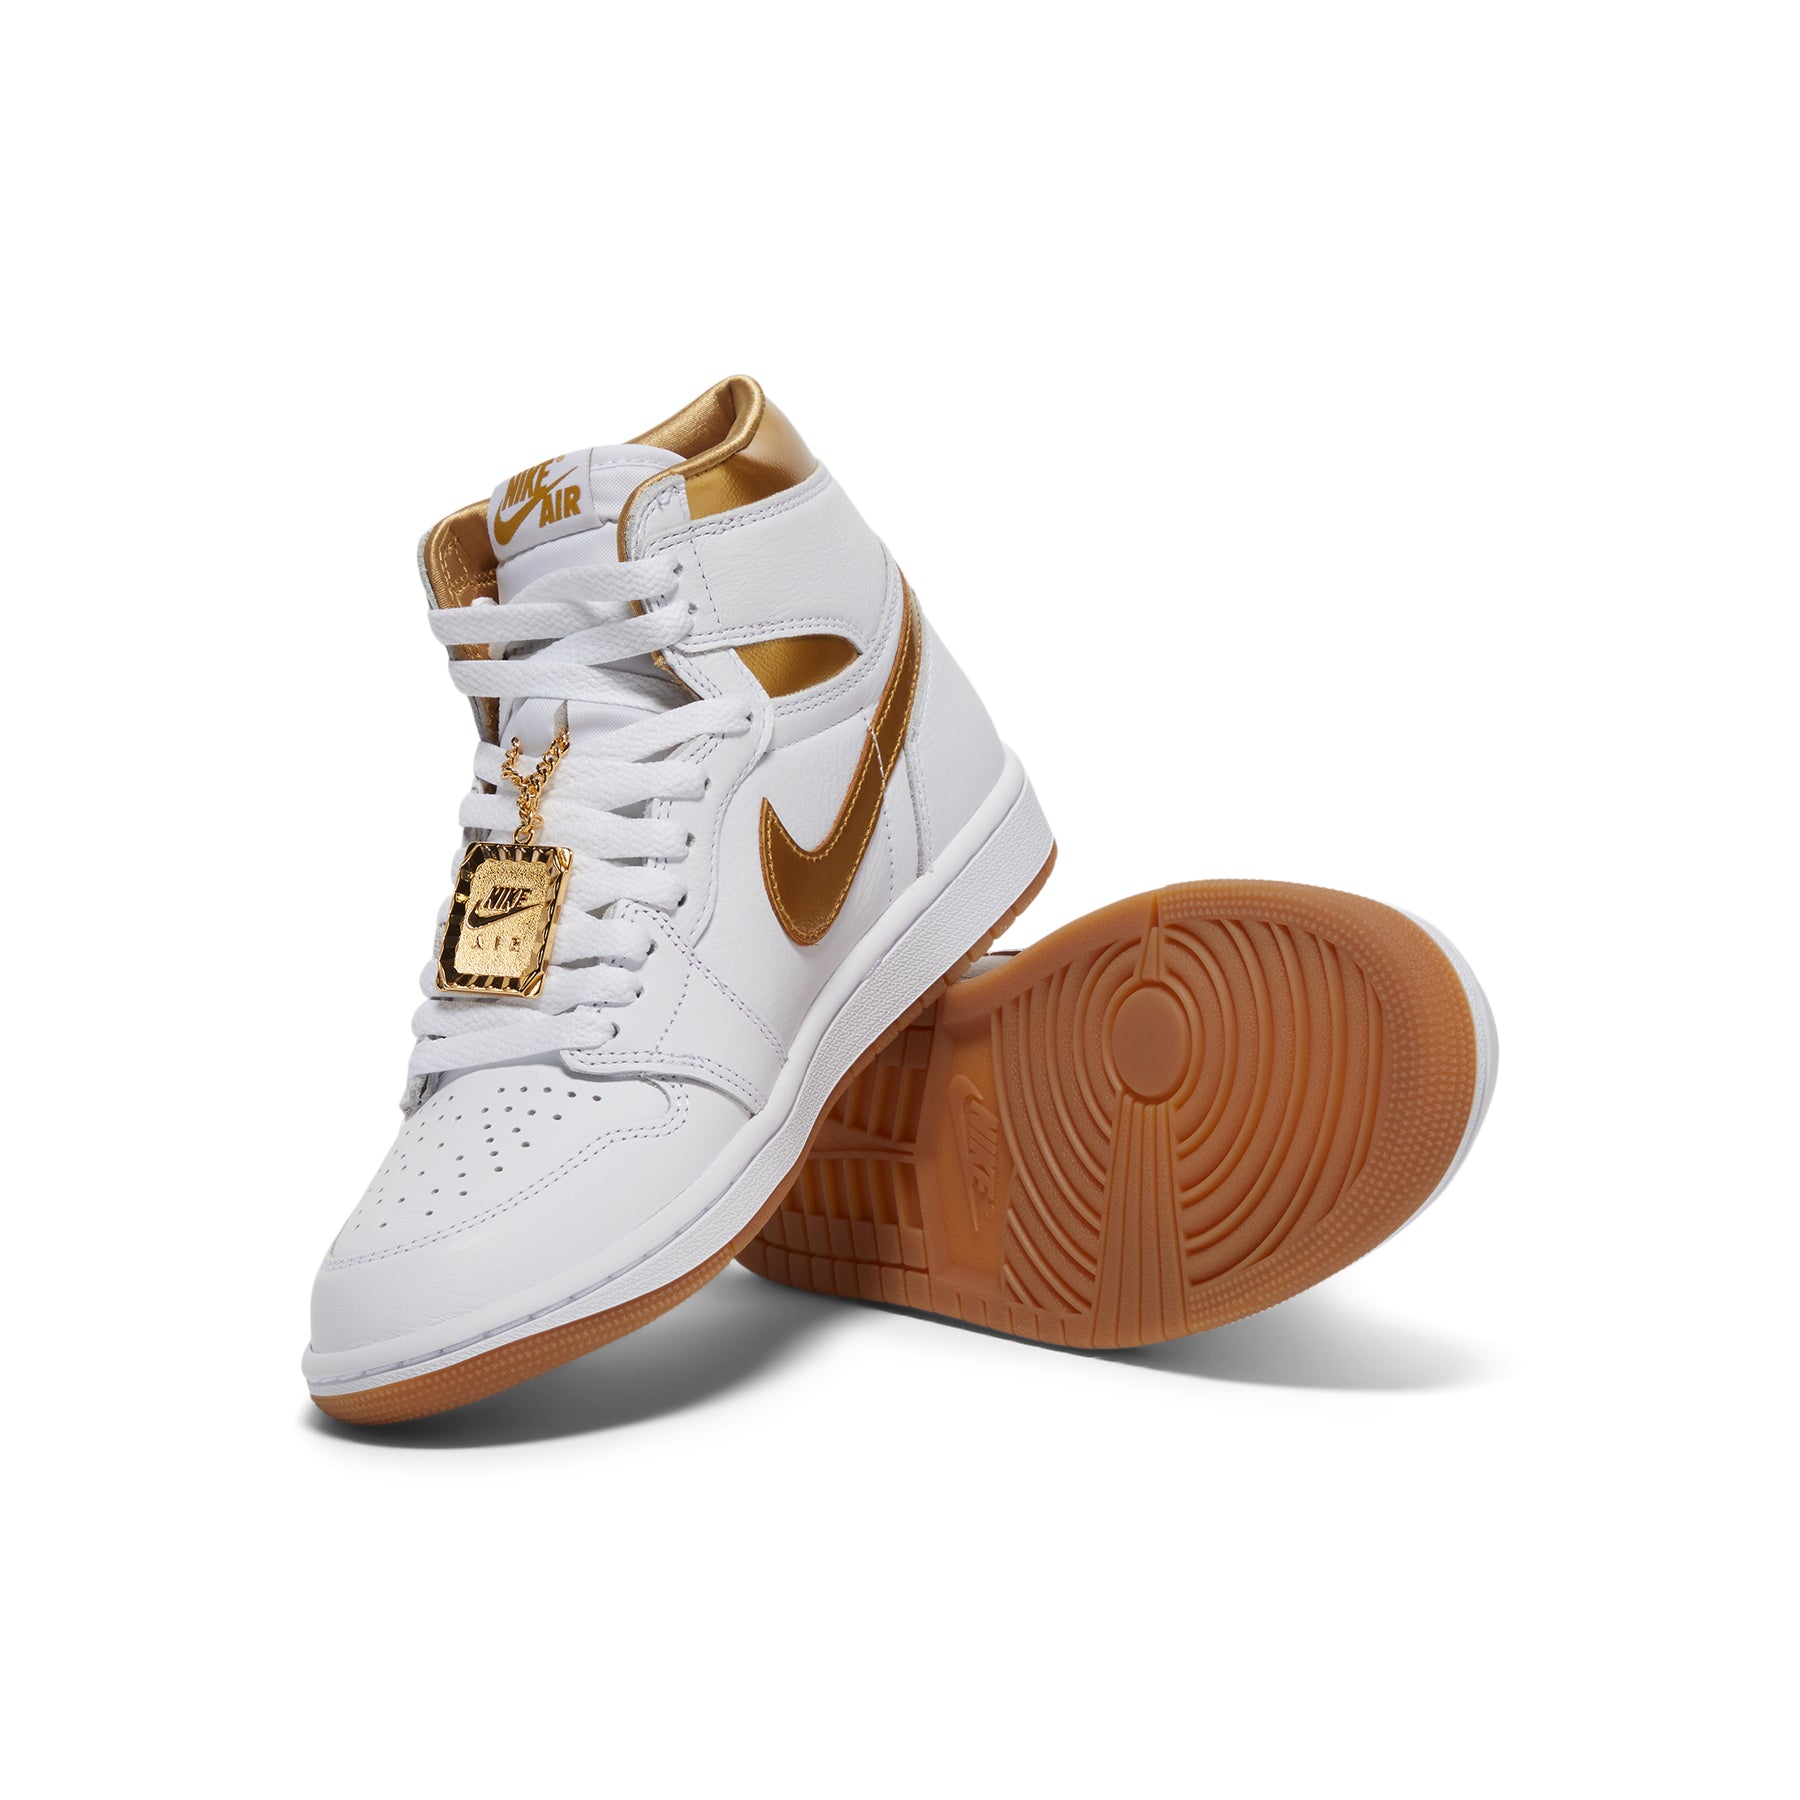 Nike Womens Air Jordan 1 Retro High OG (White/Metallic Gold/Gum Light Brown)